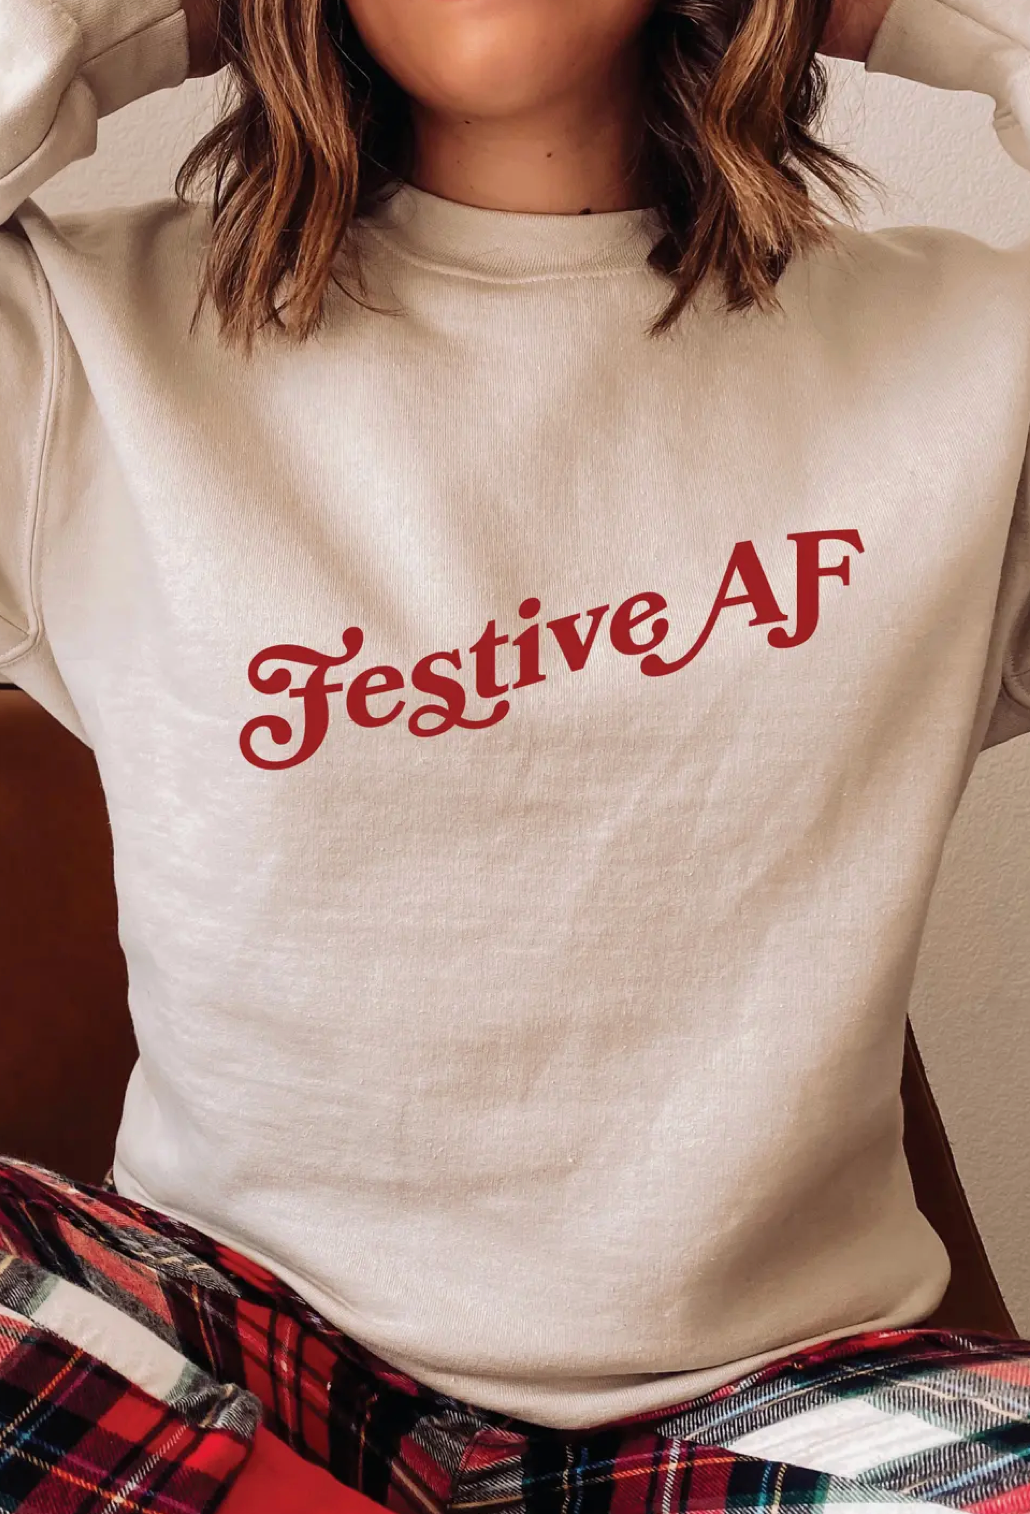 Festive AF Holiday T-shirt